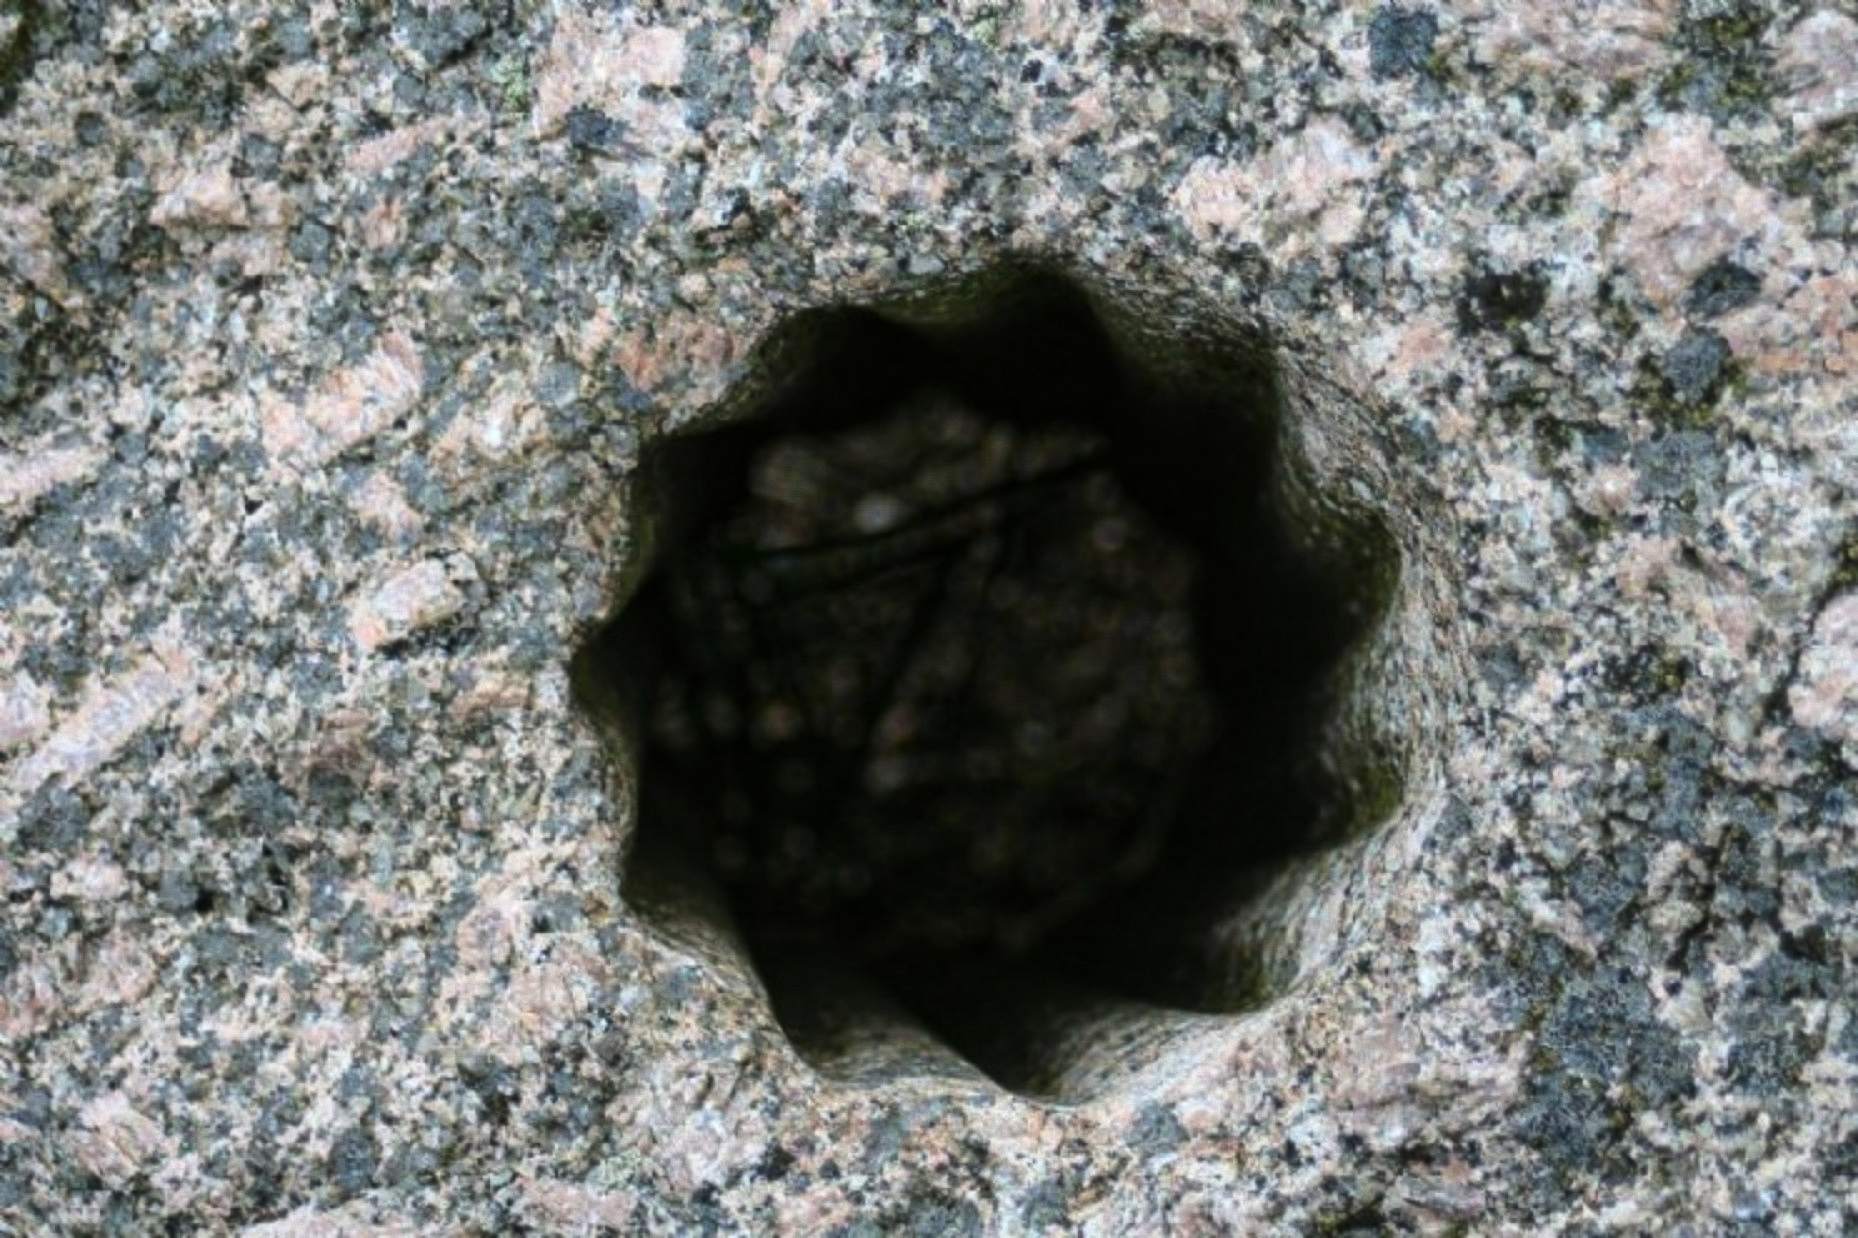 Ces étranges trous anciens en forme d'étoile ont été découverts creusés dans la pierre dure à Volda, en Norvège, une ville qui abritait autrefois de nombreux colons nordiques et qui est aujourd'hui répertoriée comme l'un des sites les plus importants pour les archéologues du pays.